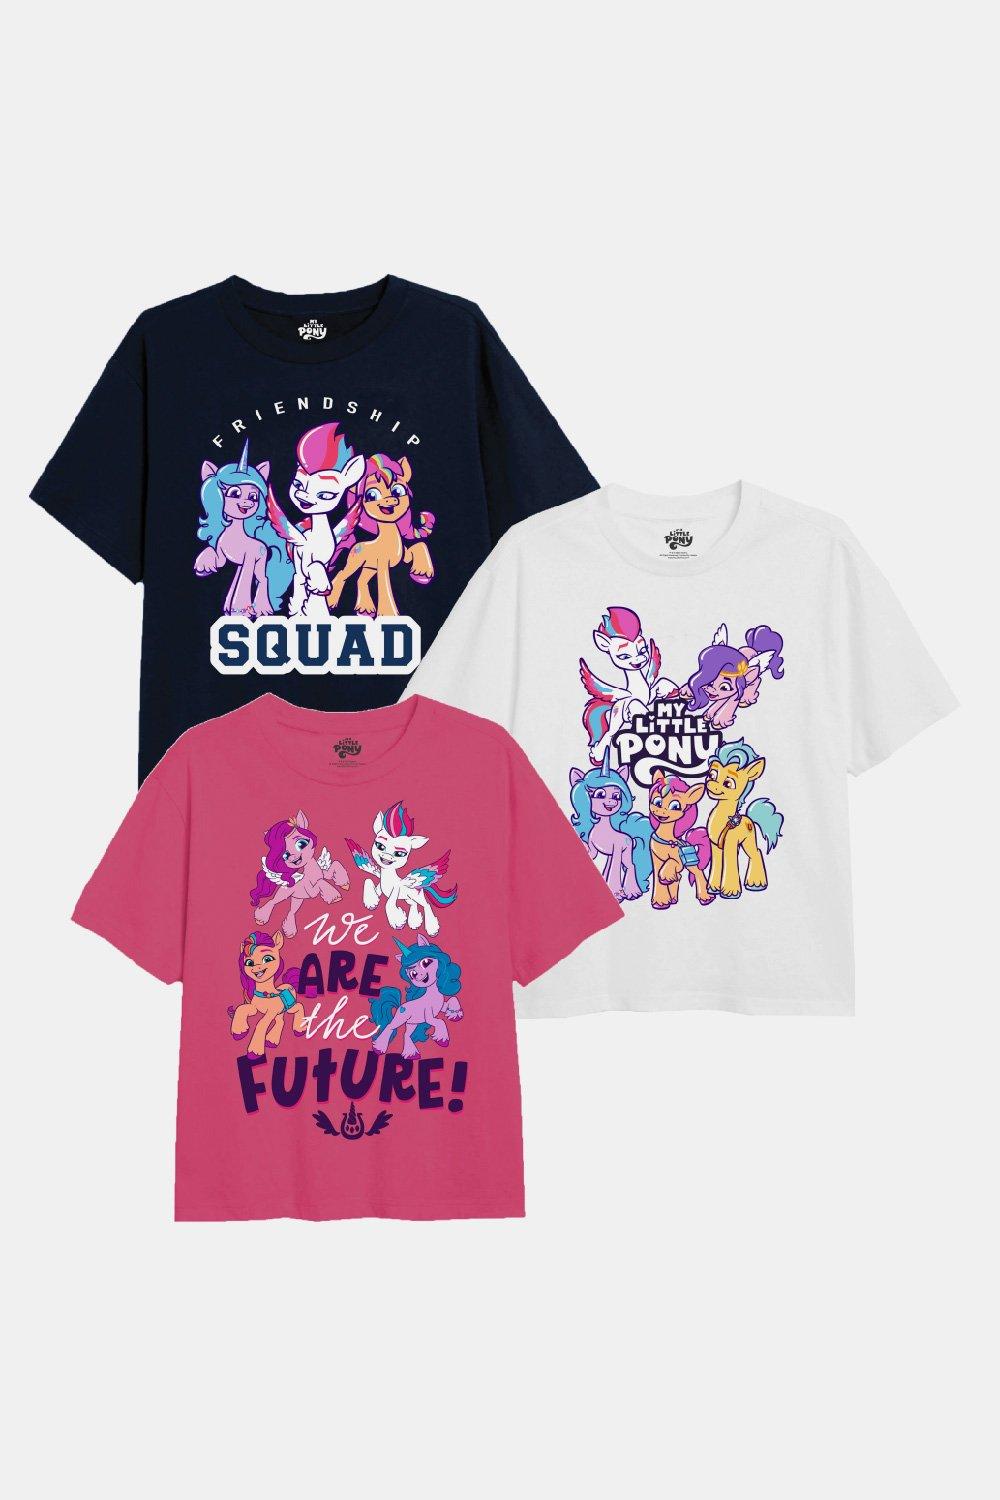 squad goals girls t-shirt 3 pack